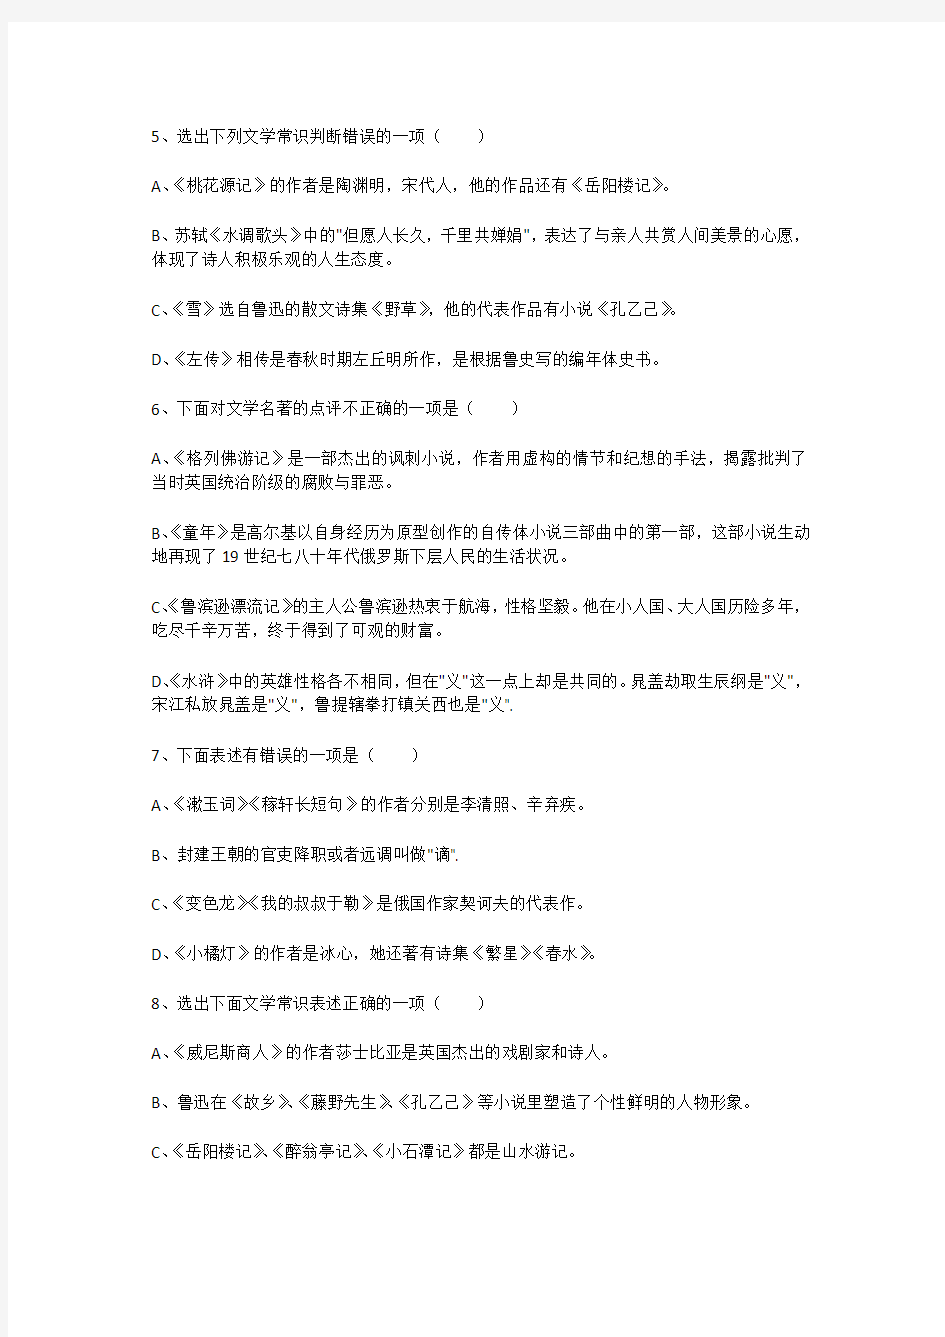 初中语文总复习基础题100道(带答案)文学常识题